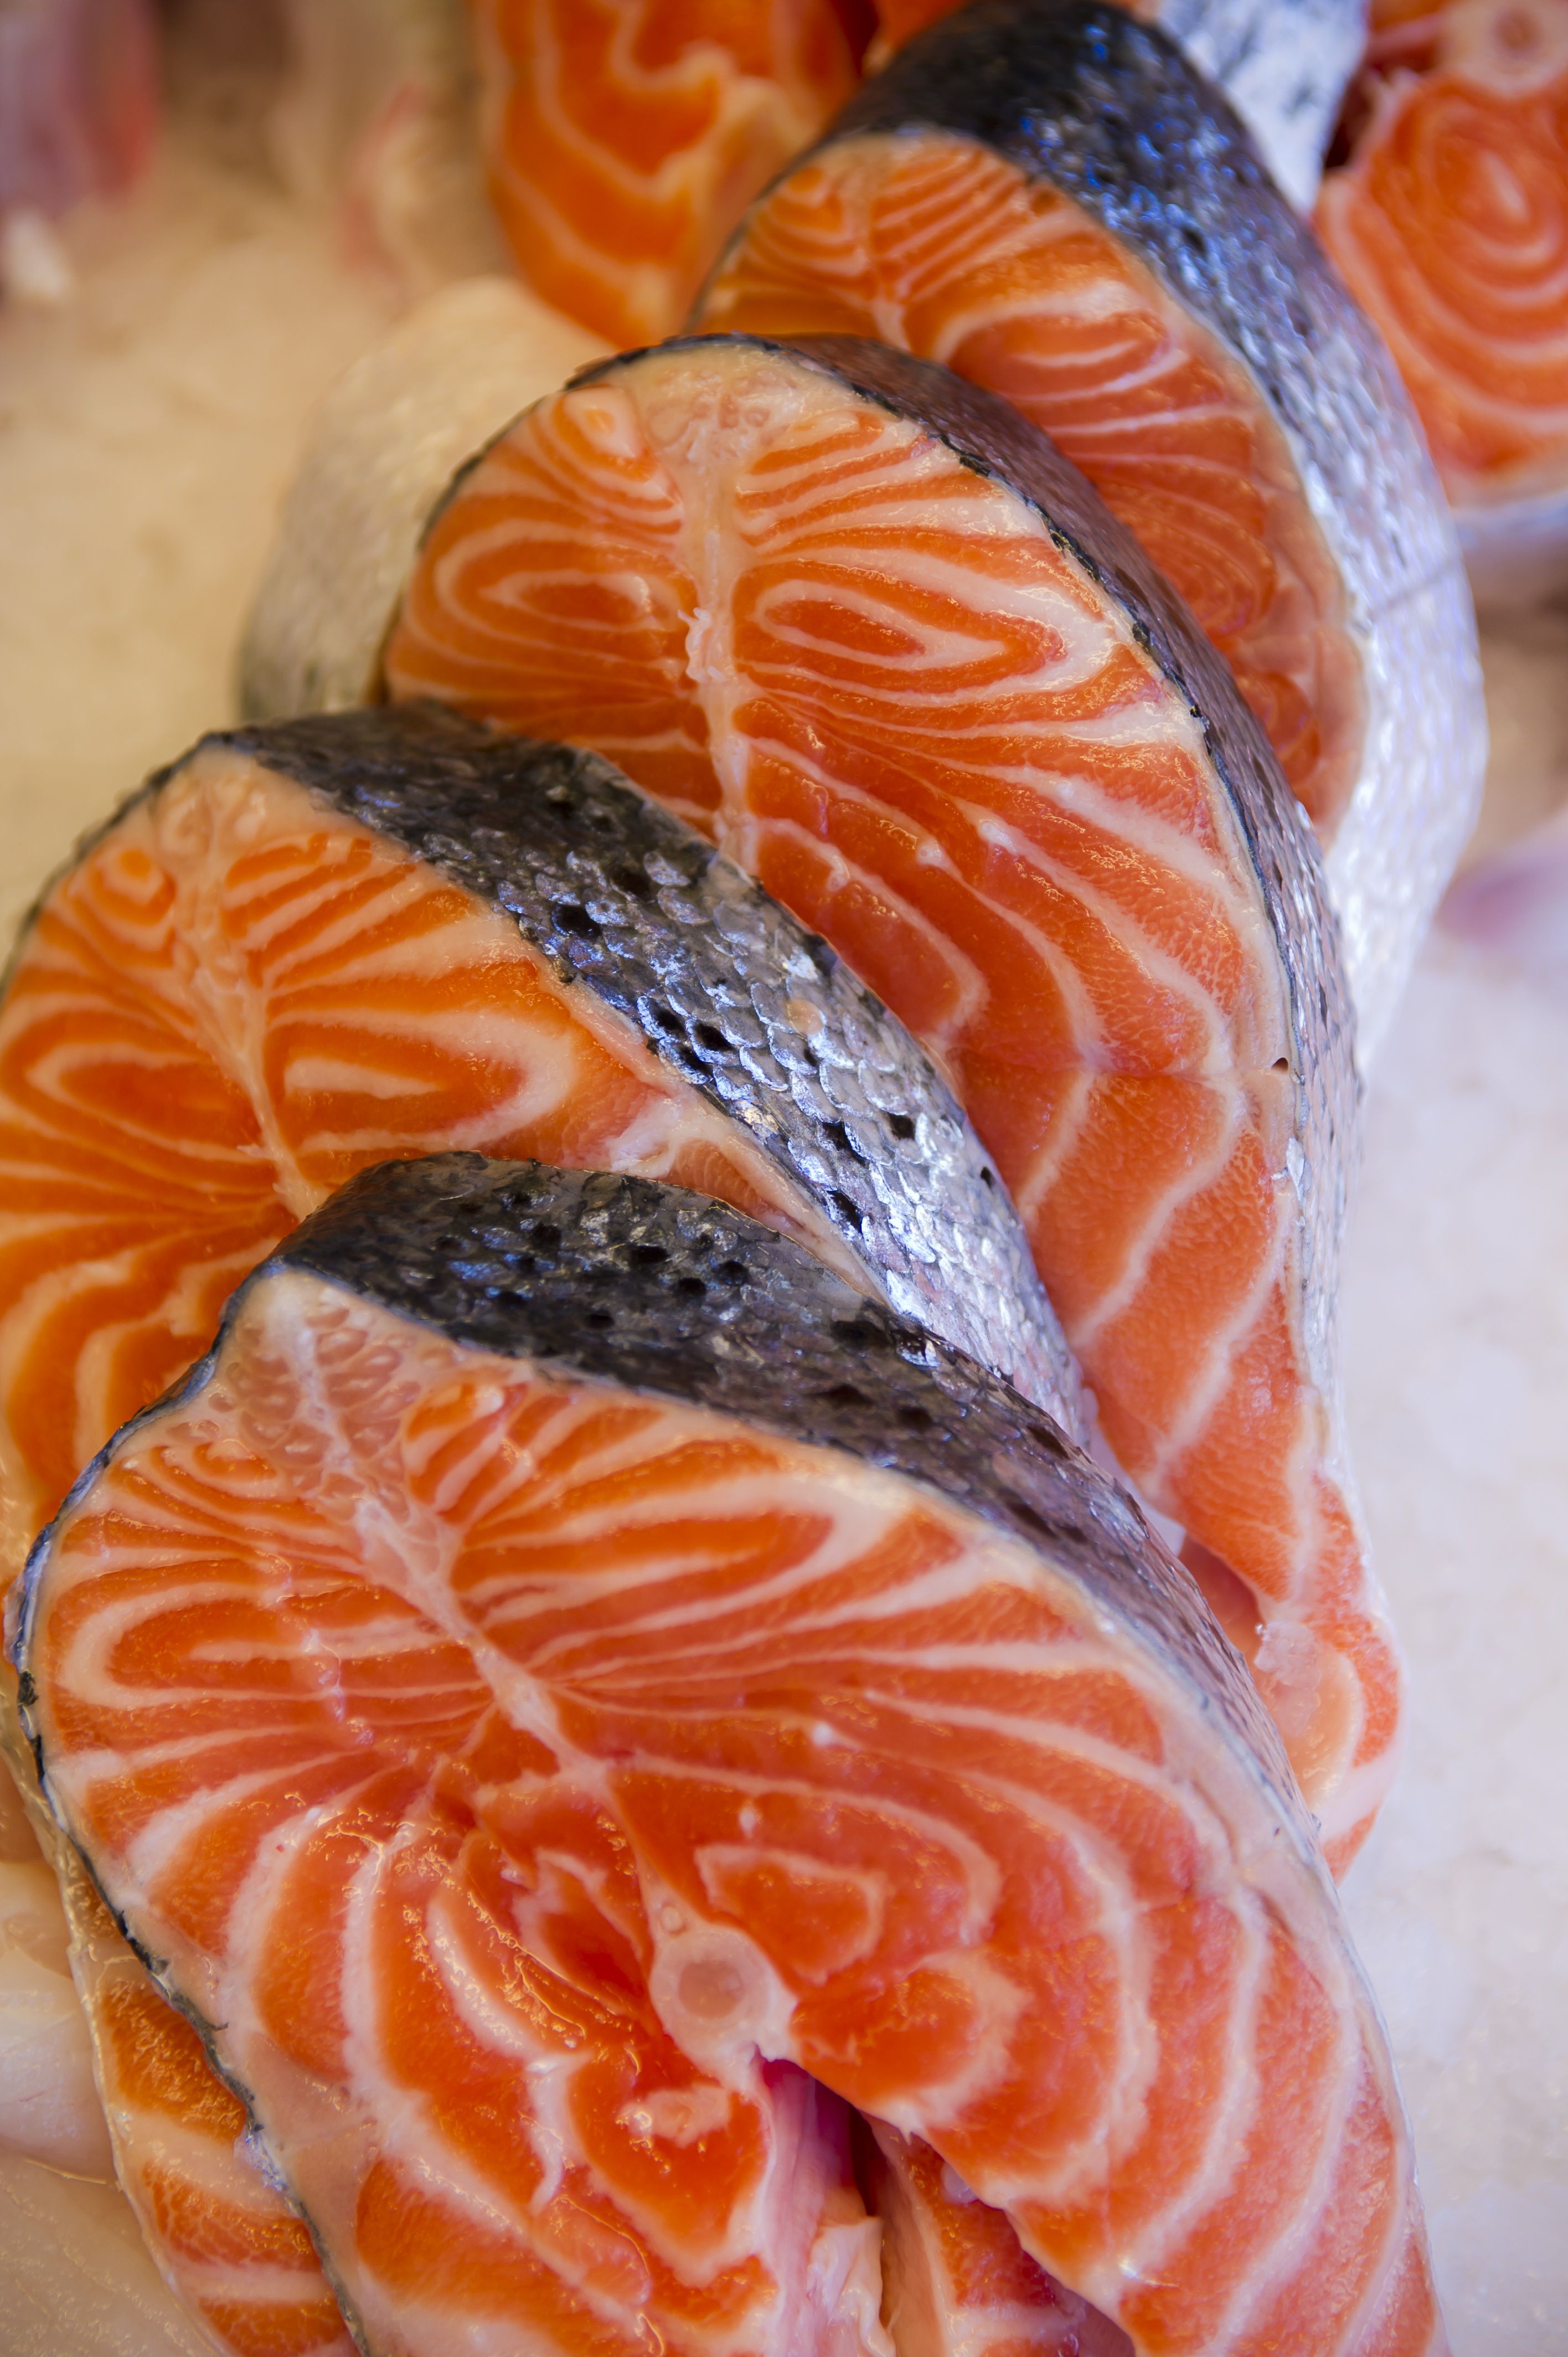 挪威美食三文鱼:挪威人的骄傲-搜狐旅游